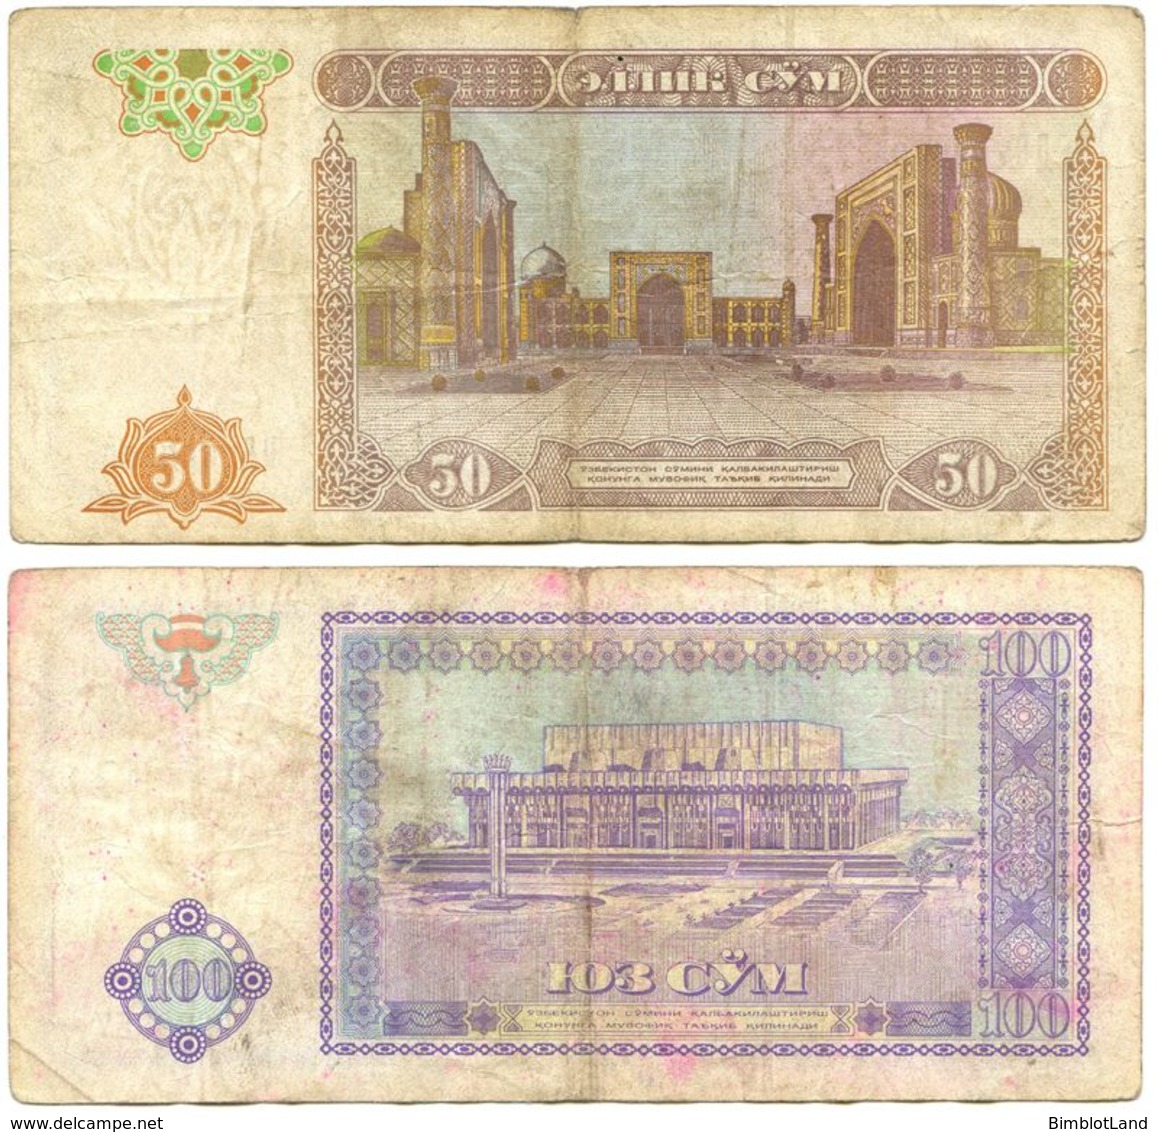 2 Billet Uzbekistan 100 Et 50 Cym 1994 Ouzbekistan - Usbekistan